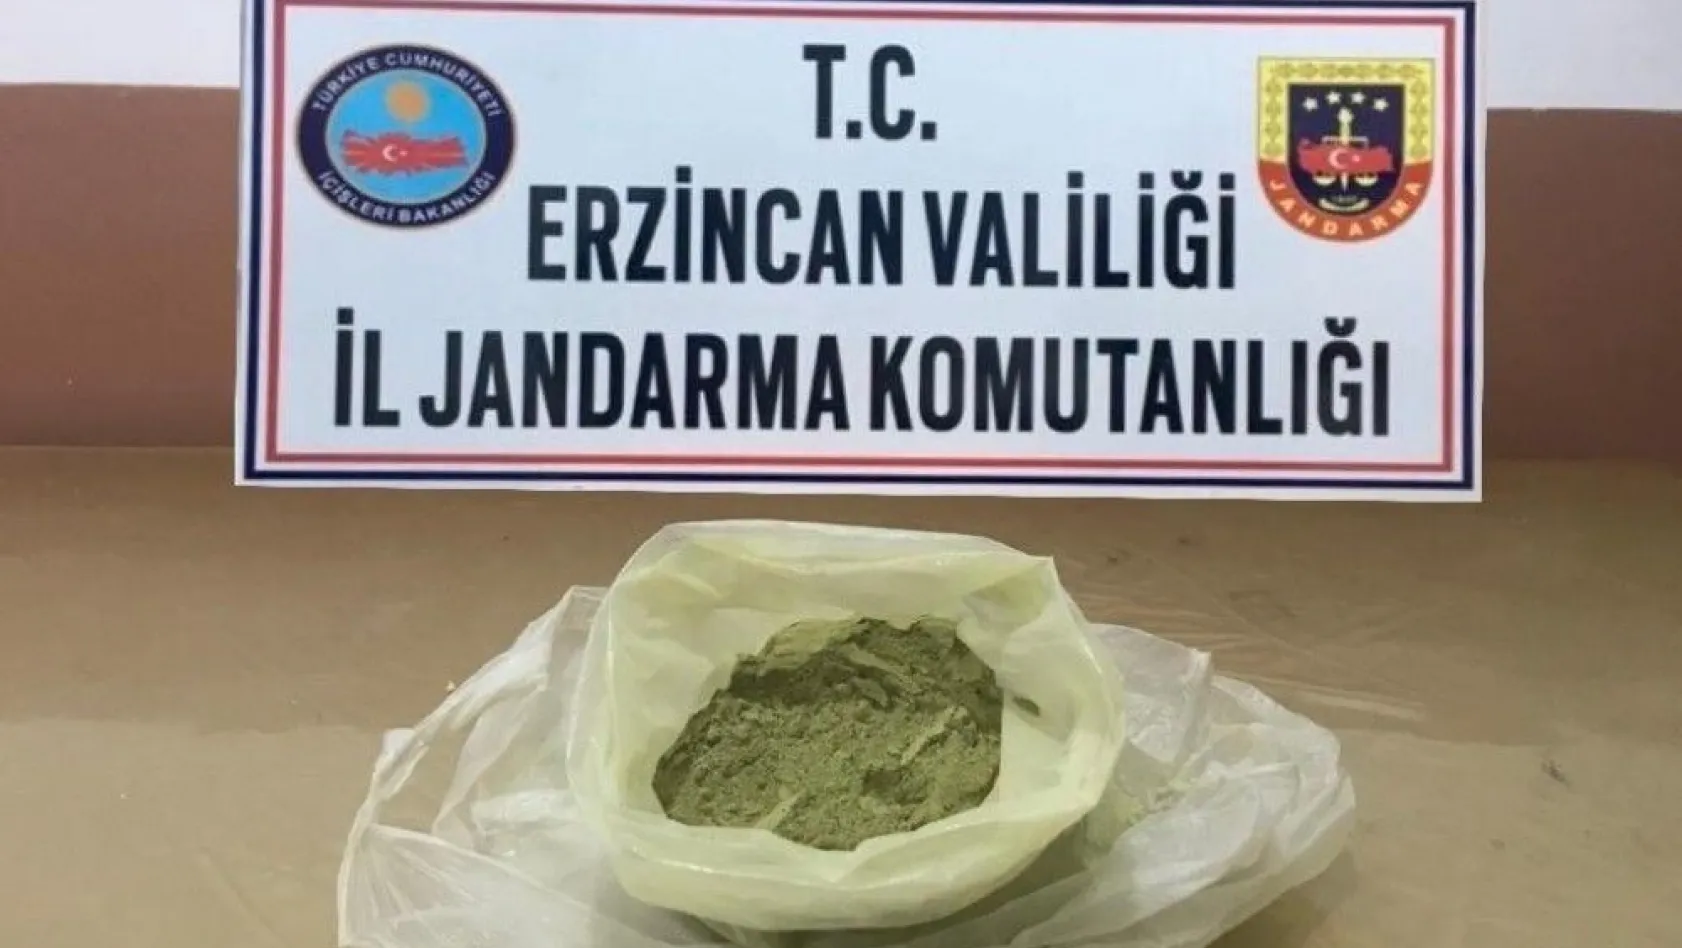 Erzincan'da 500 gram toz esrar ele geçirildi
